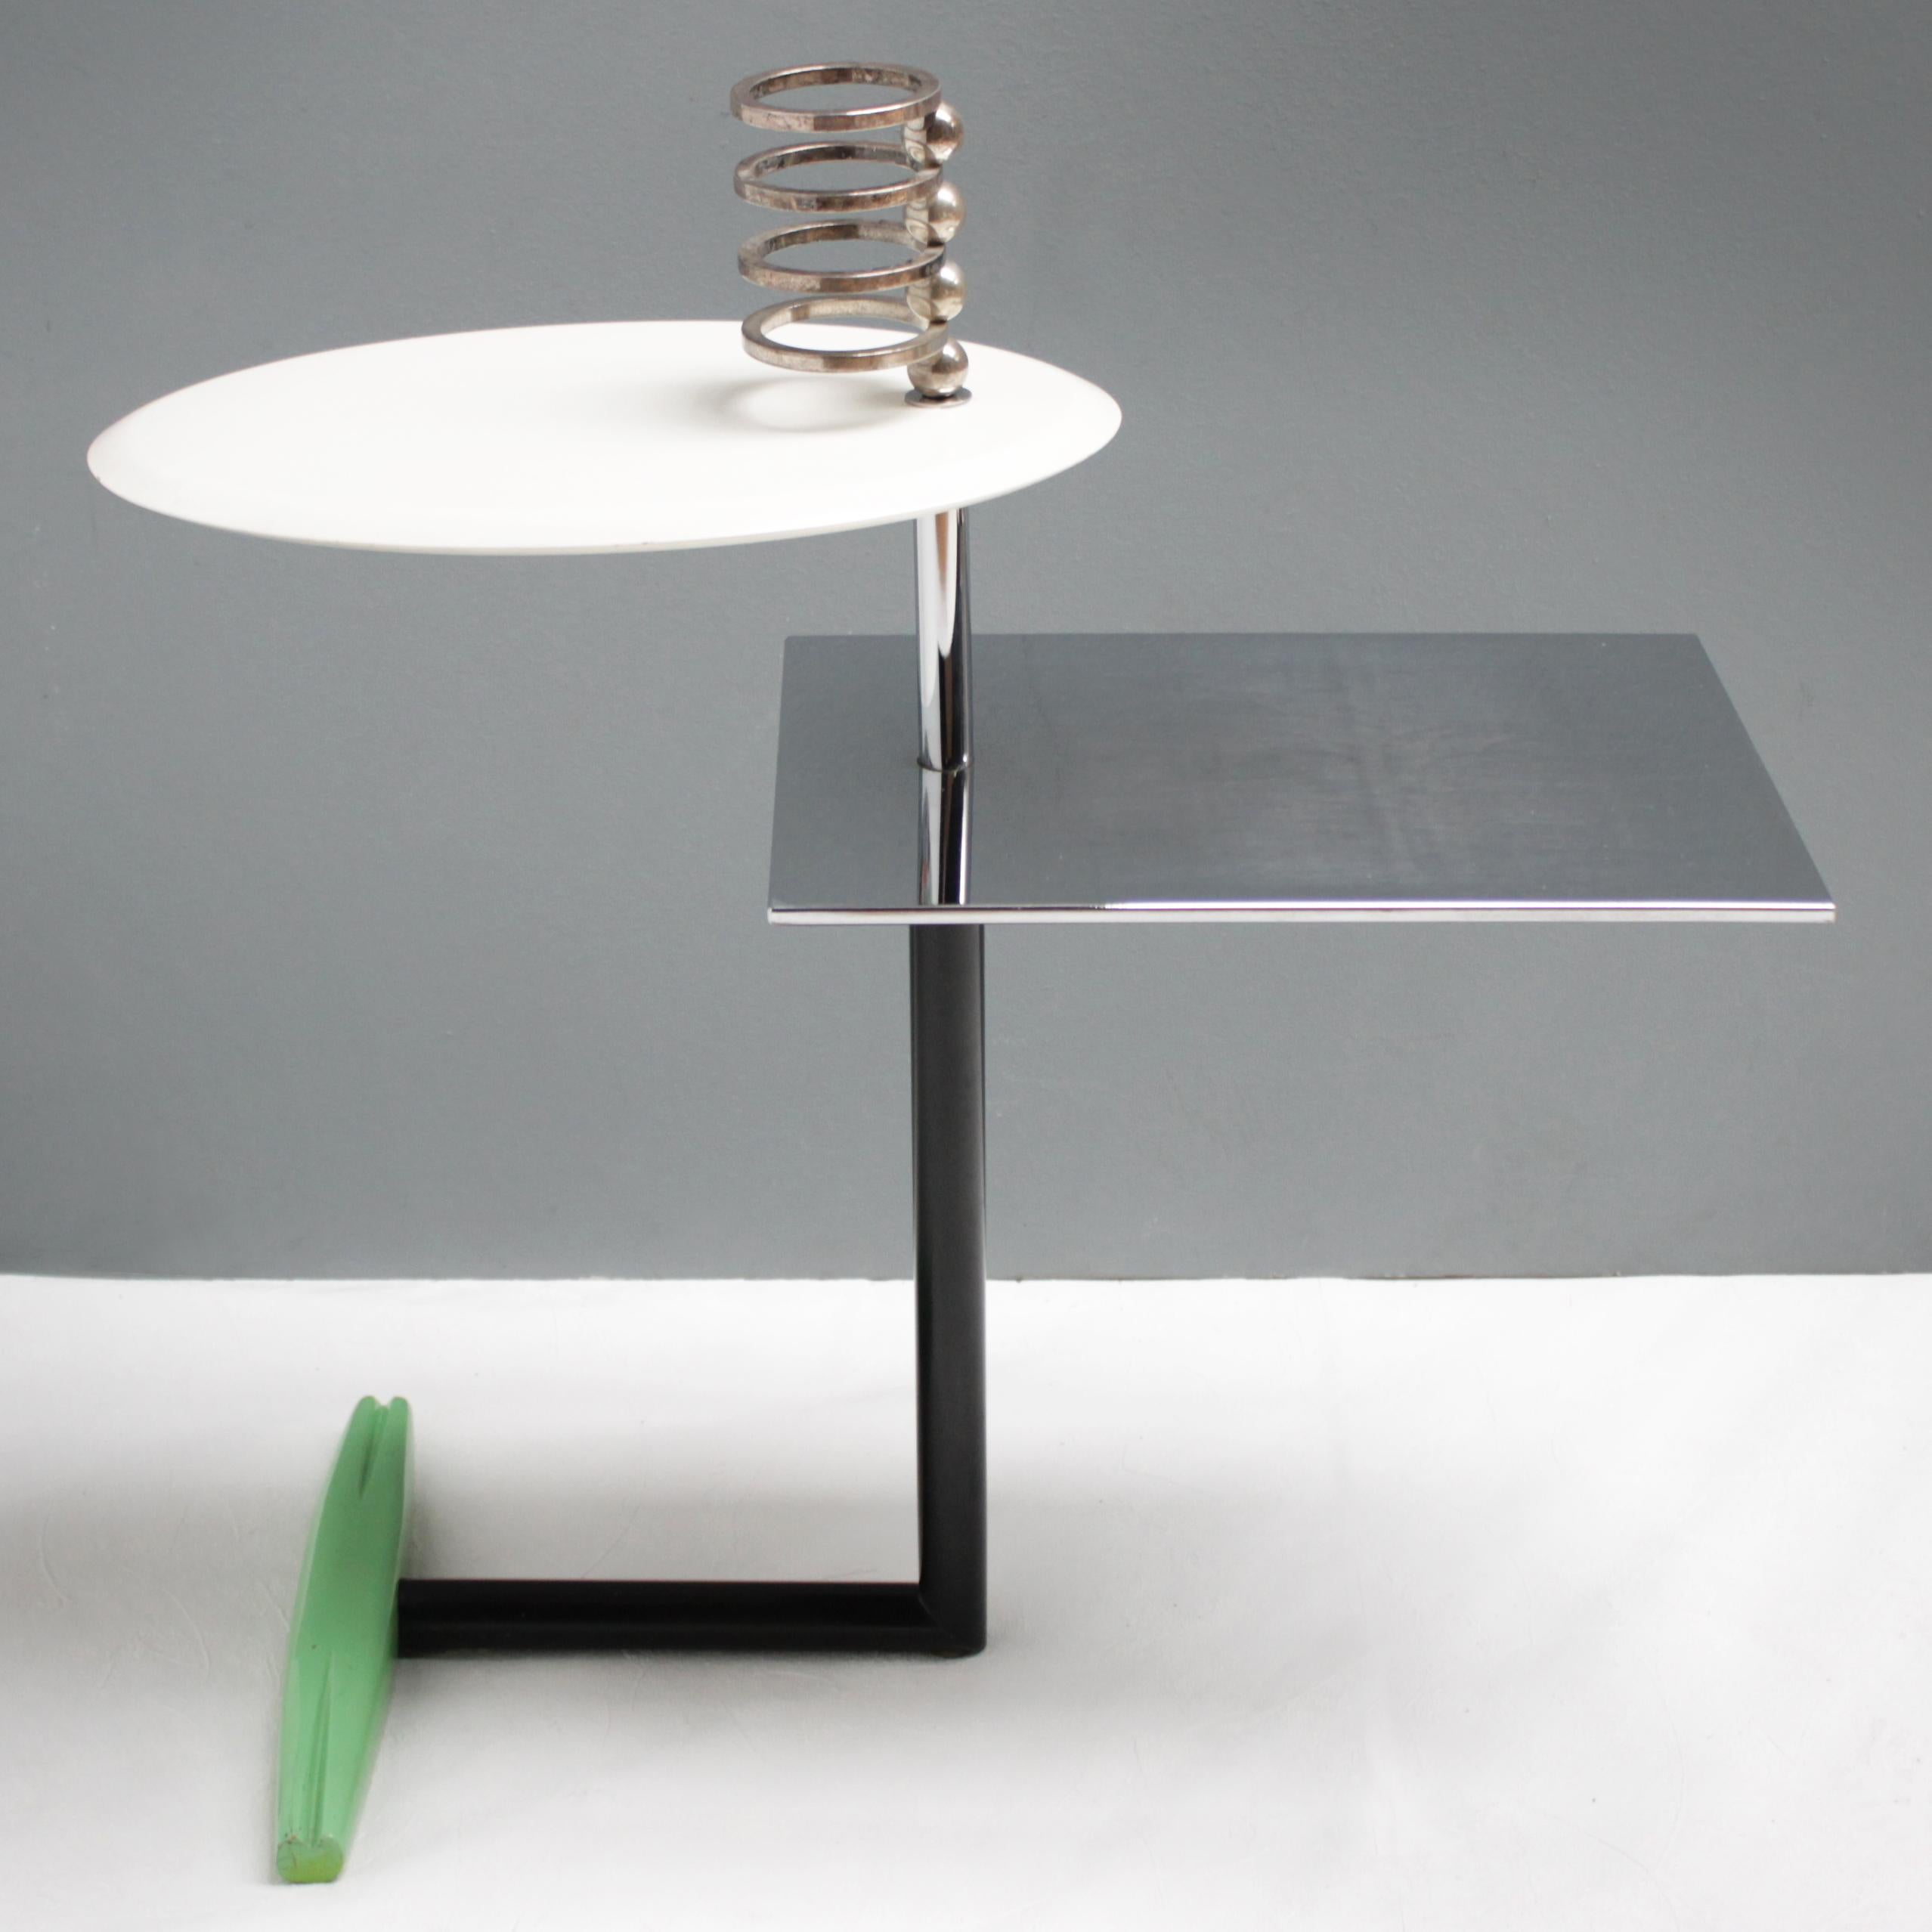 Table 'Acilio' by Alessandro Mendini for Zabro, Nuova Alchimia 2